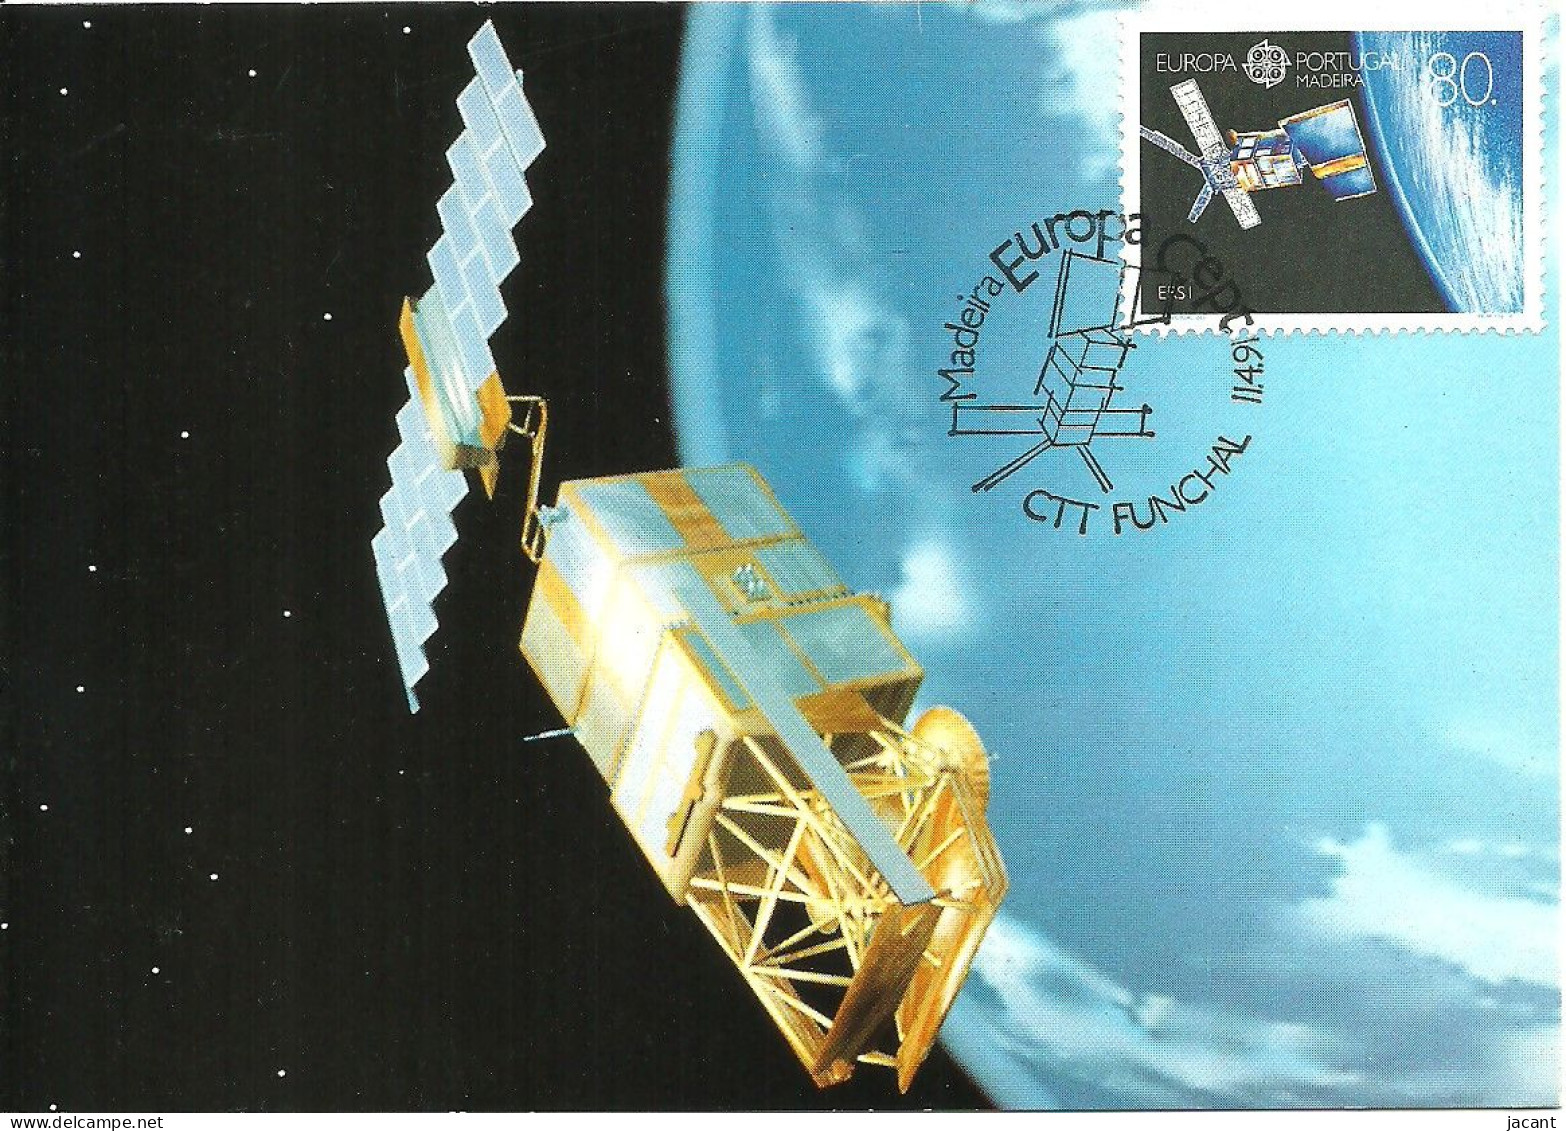 30835 - Carte Maximum - Portugal Madeira - Europa - Satetite ERS-1 Satellite - Maximum Cards & Covers